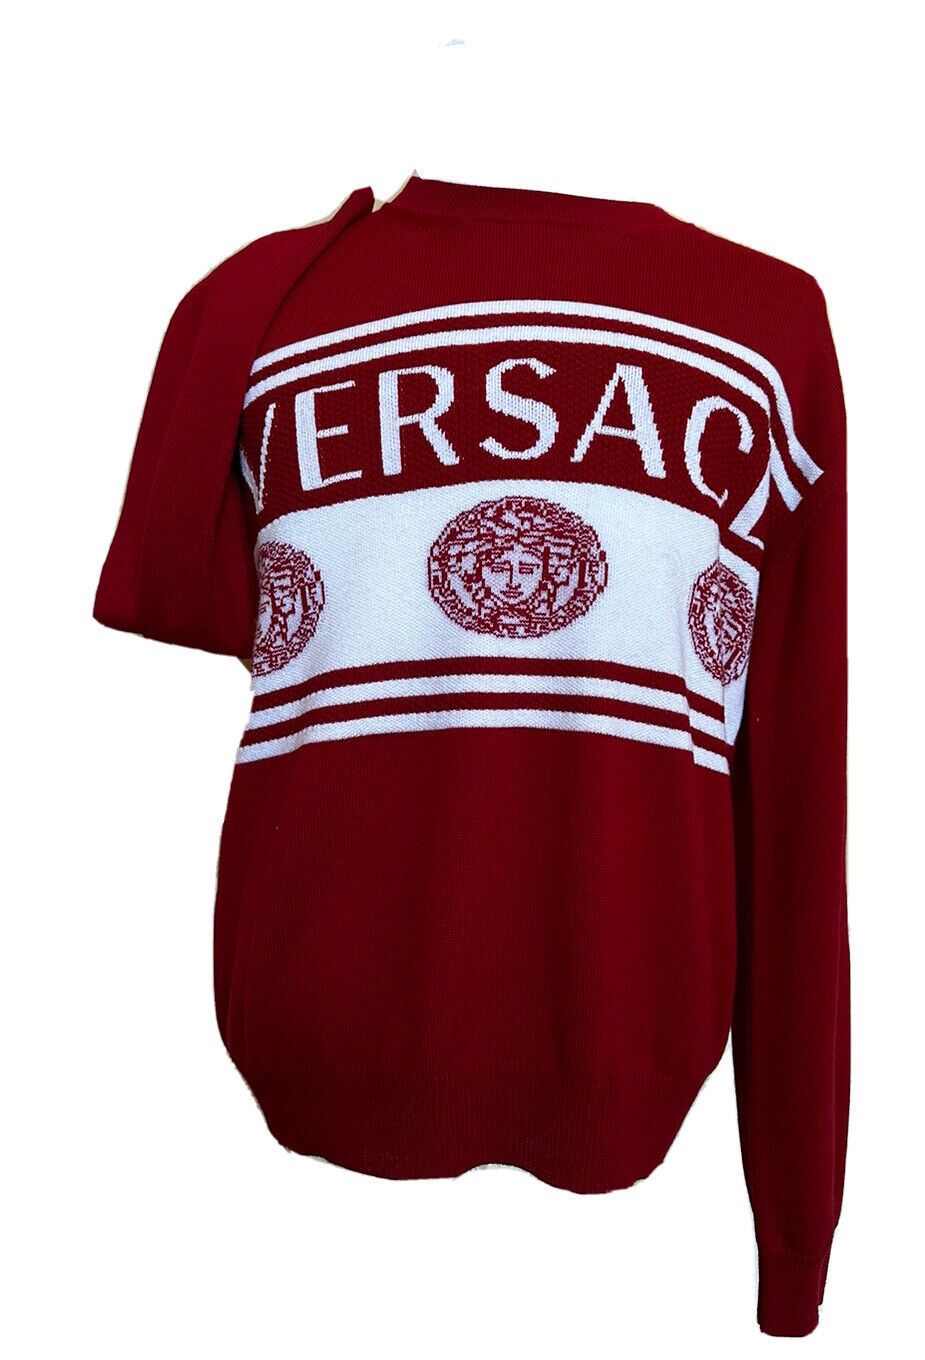 NWT $950 Versace Medusa Logo Шерстяной вязаный свитер Красный 54 (2XL) Италия 1002719 